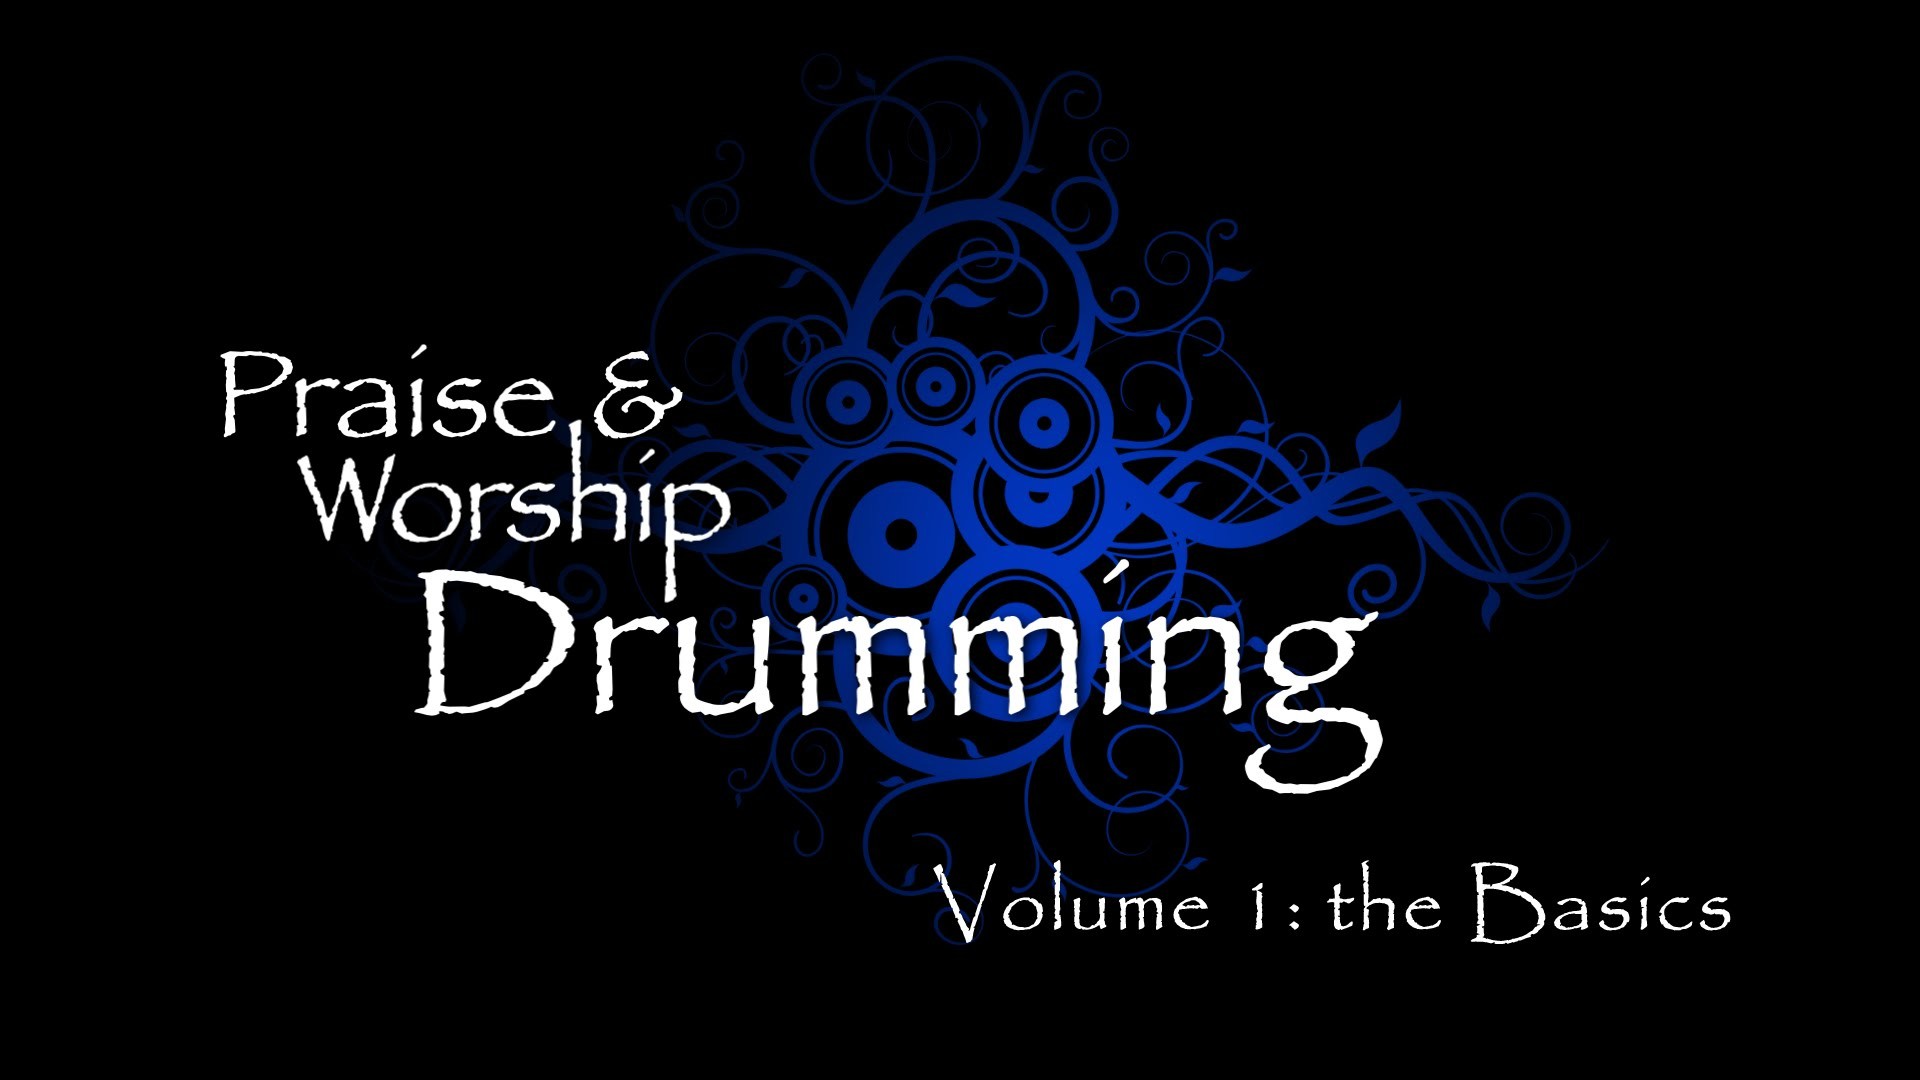 1920x1080 Praise & Worship Drumming, Vol 1 - DVD Promo